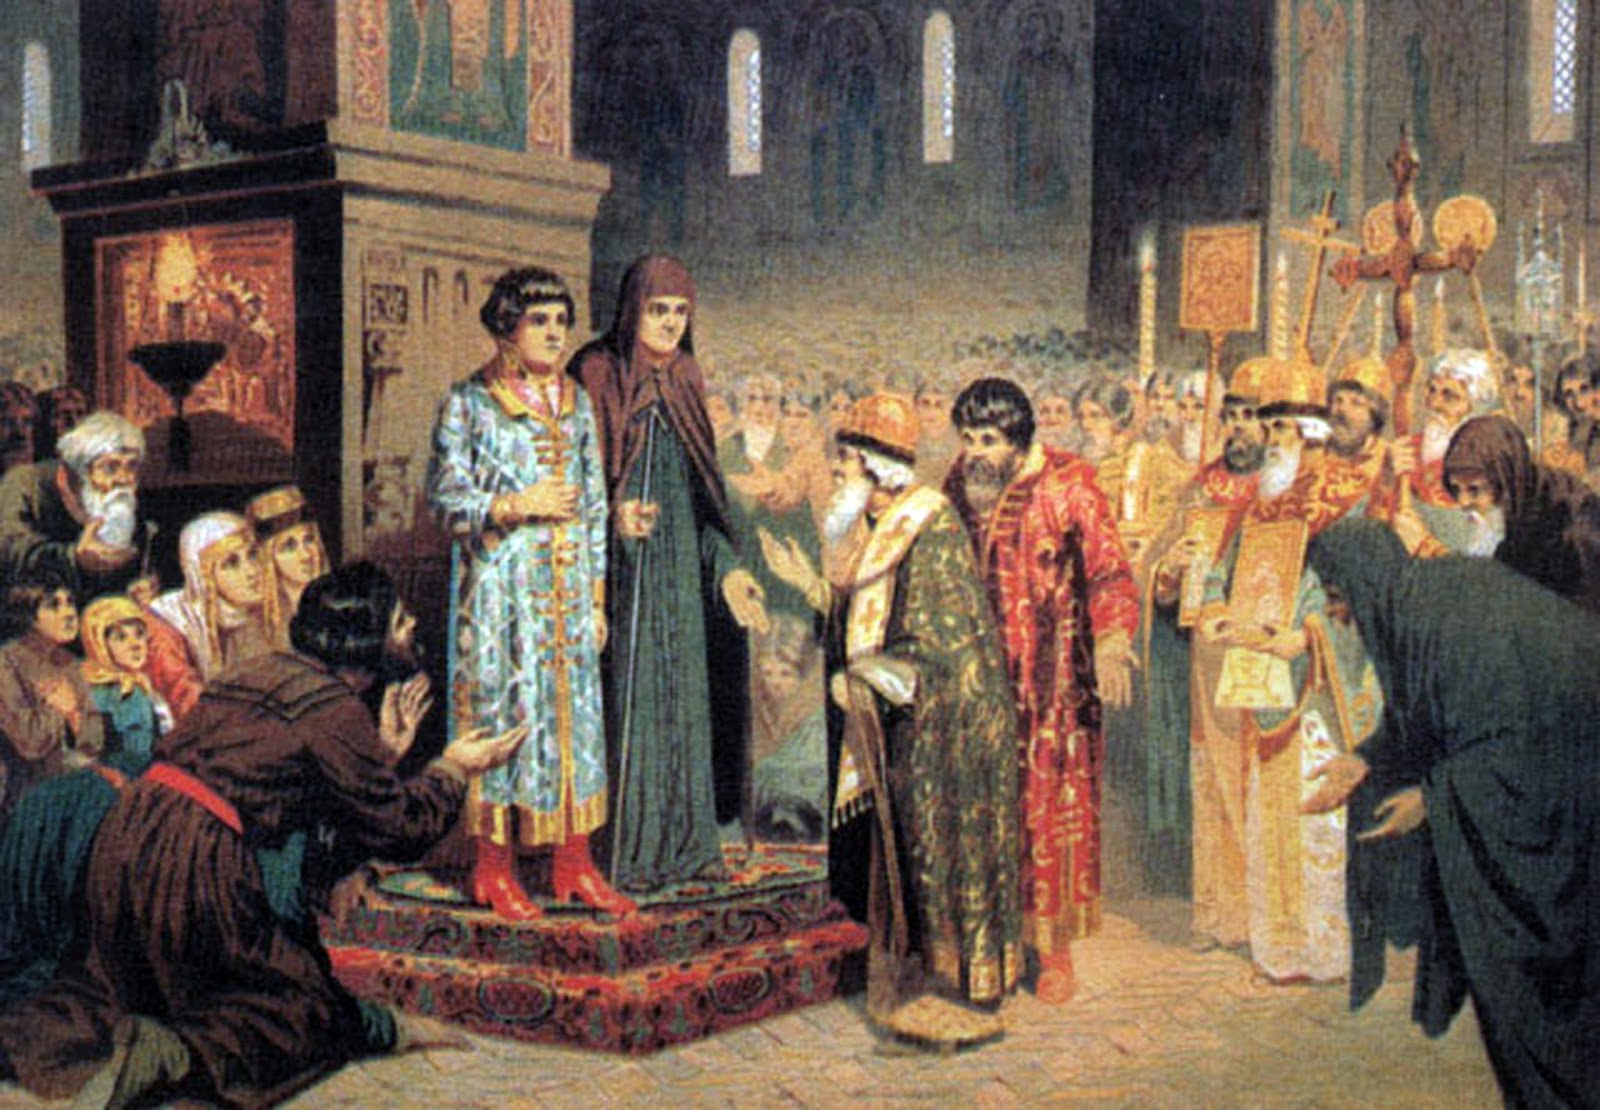 Первым русским царем избранным. Избрание Михаила Романова 1613.